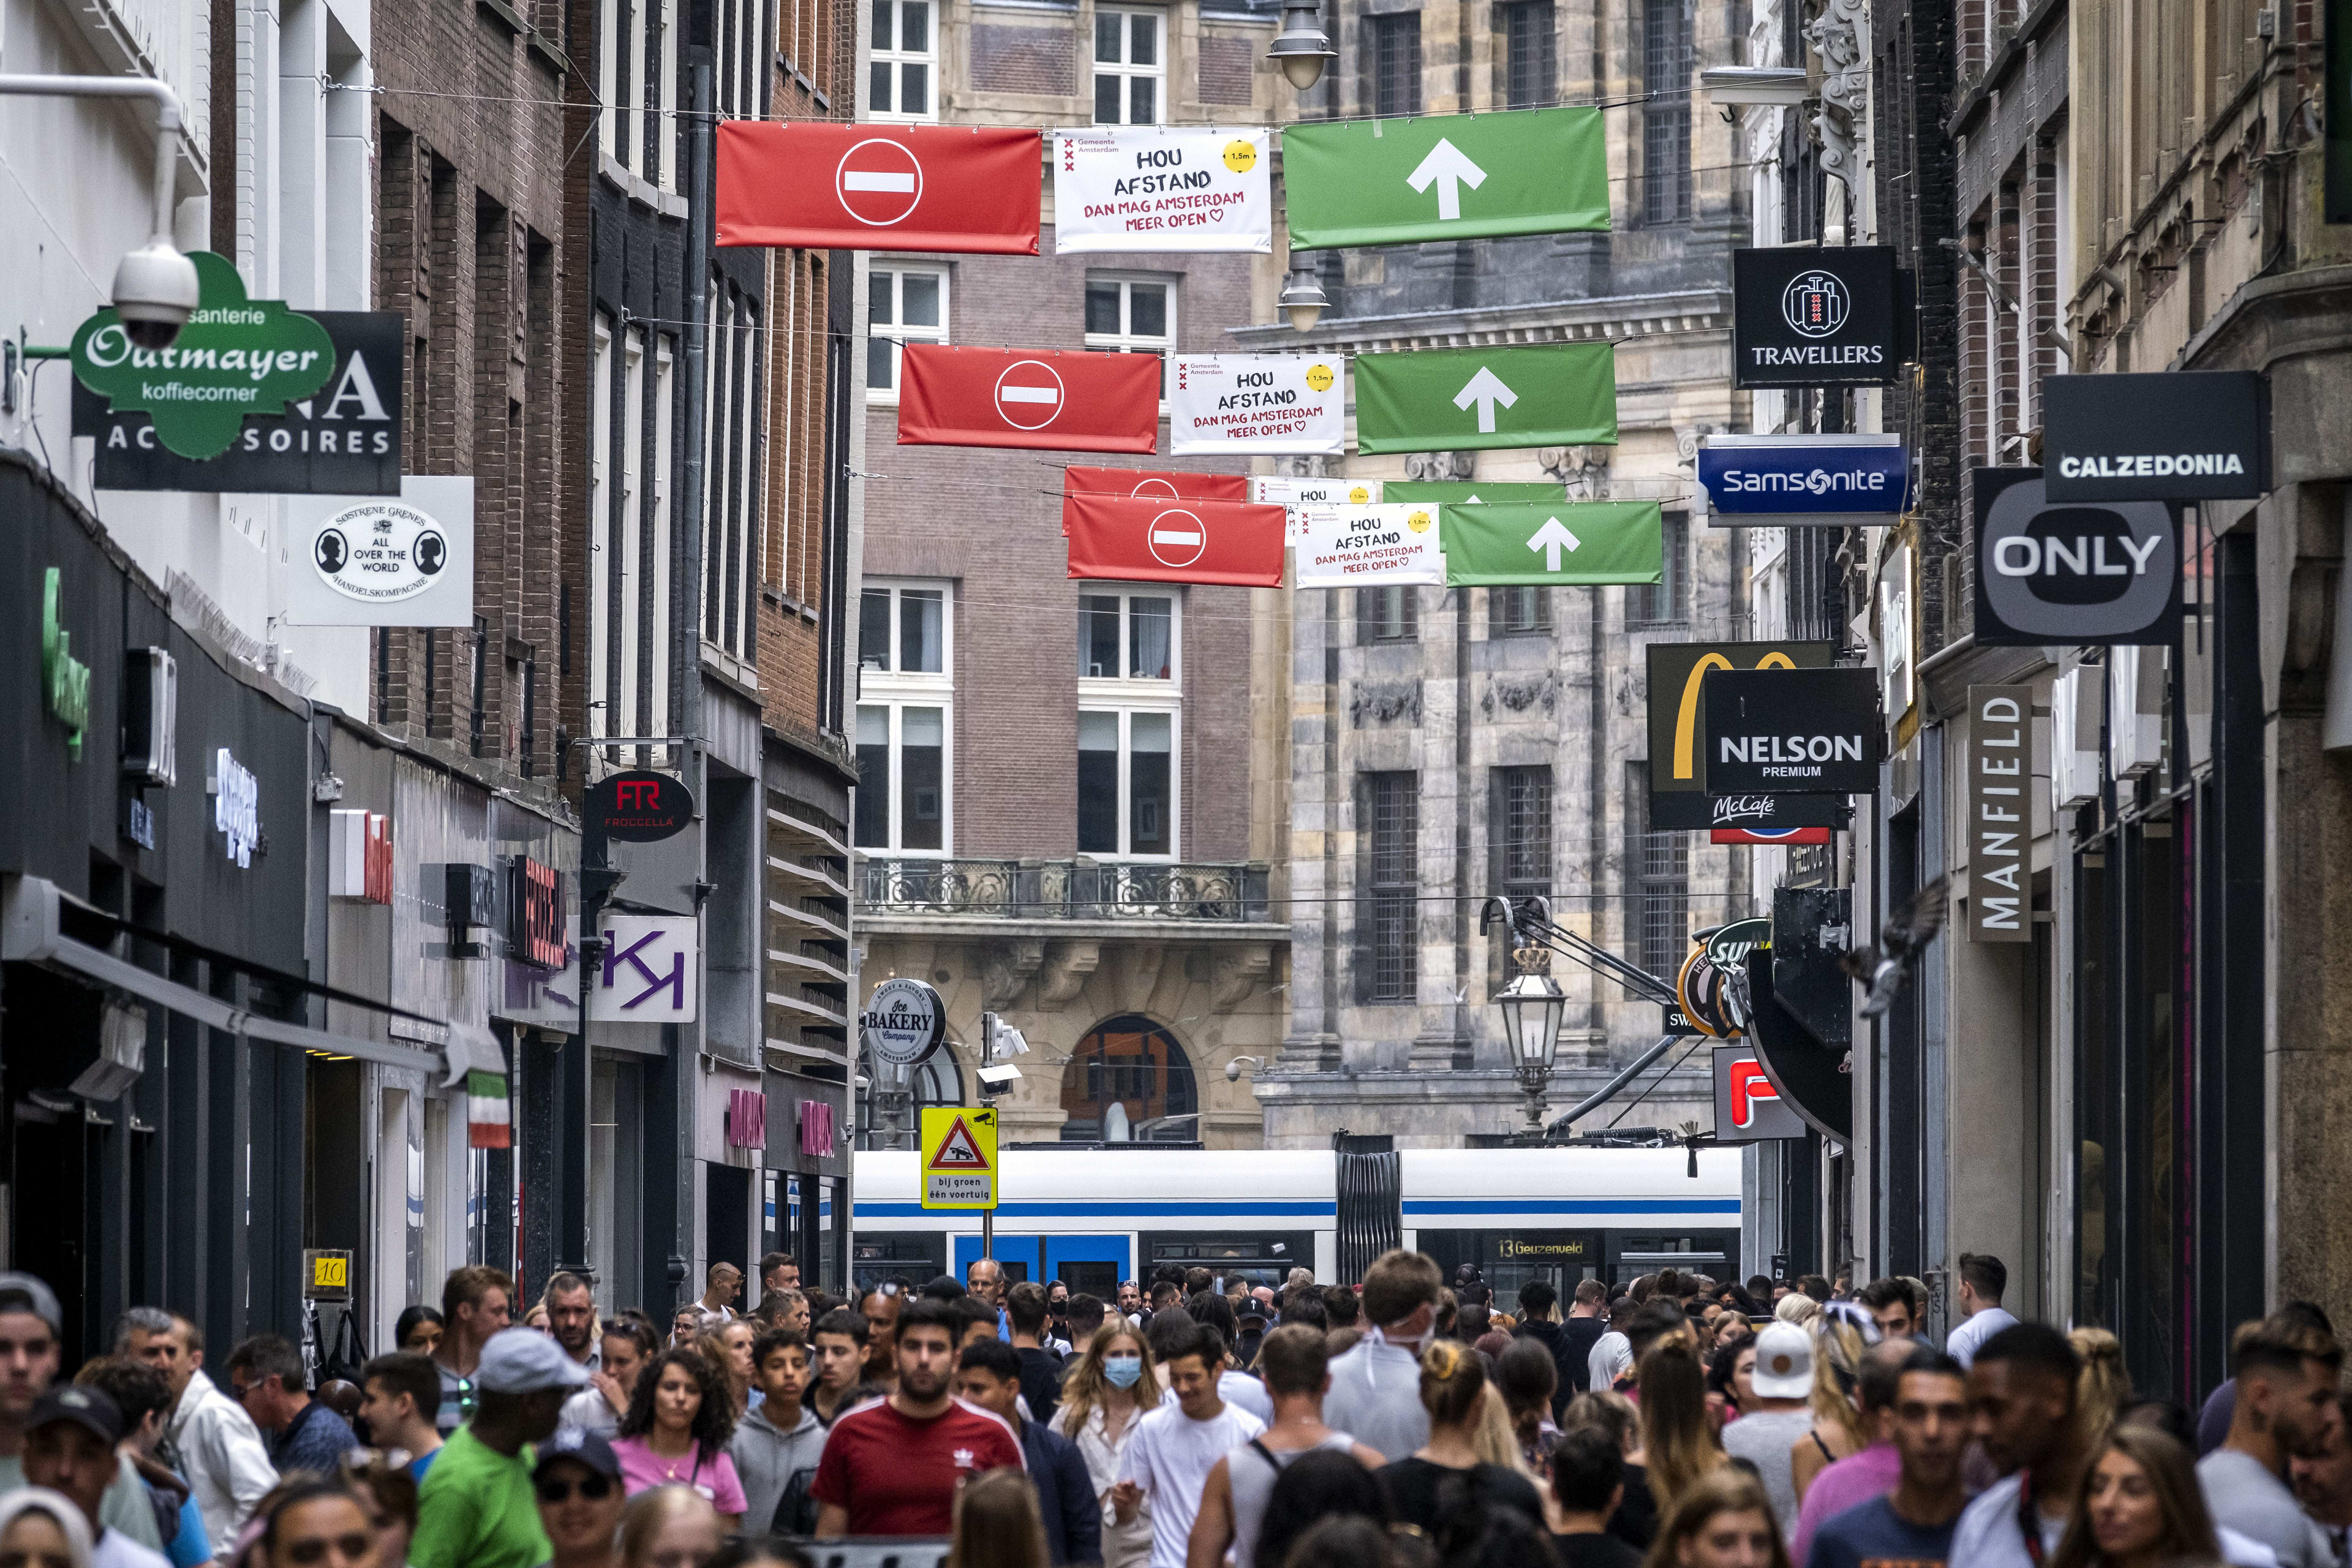 Tijdelijk eenrichtingsverkeer voor winkelend publiek in Kalverstraat: 'Druk maar beheersbaar'